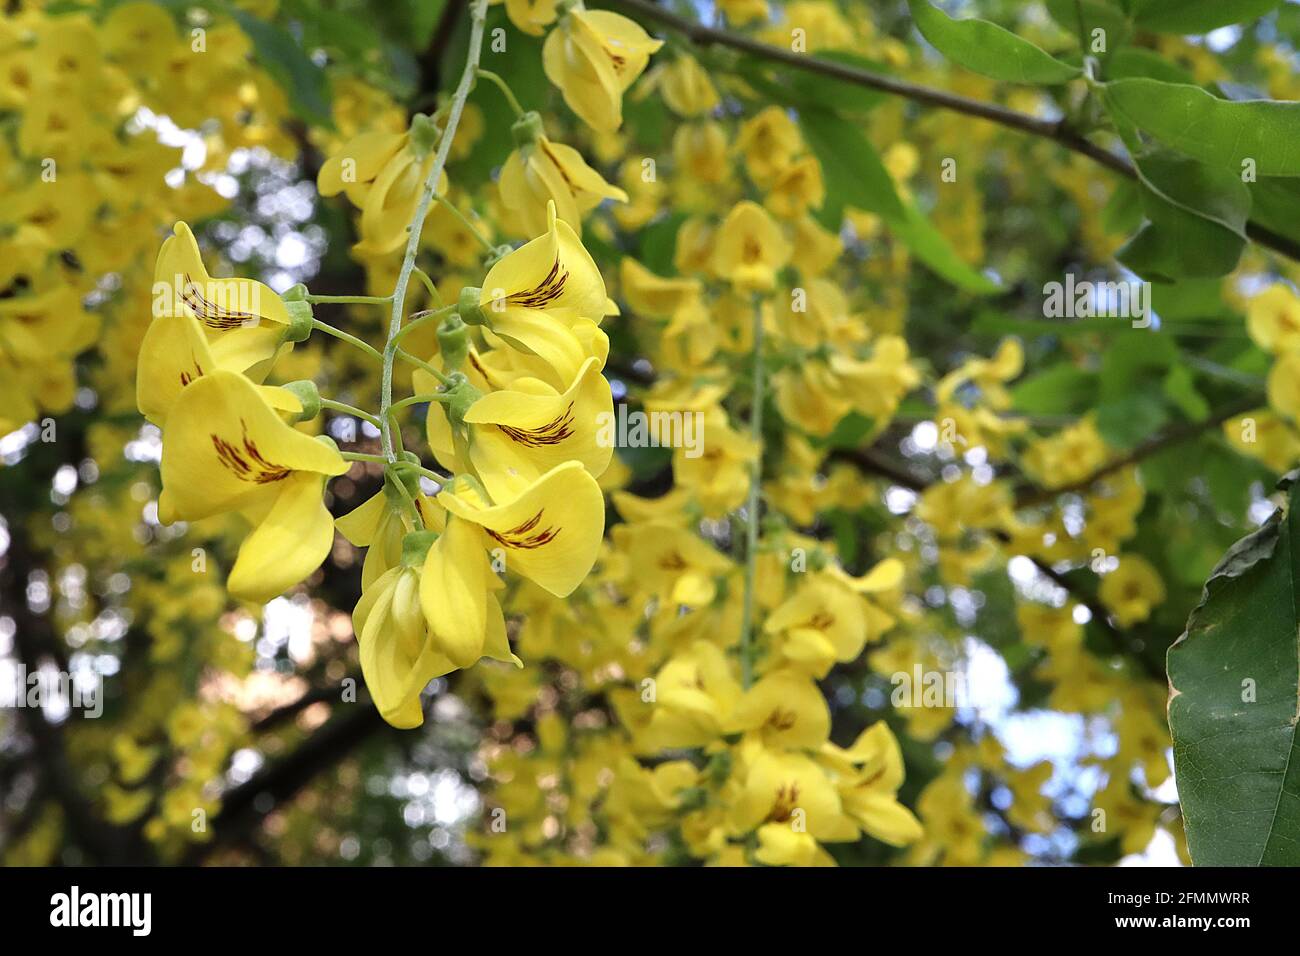 Laburnum x anagyroides ‘Yellow Rocket’ catena d’oro – fiori gialli simili ai piselli con blotch marrone, foglie fresche di ovato verde, maggio, Inghilterra, Regno Unito Foto Stock